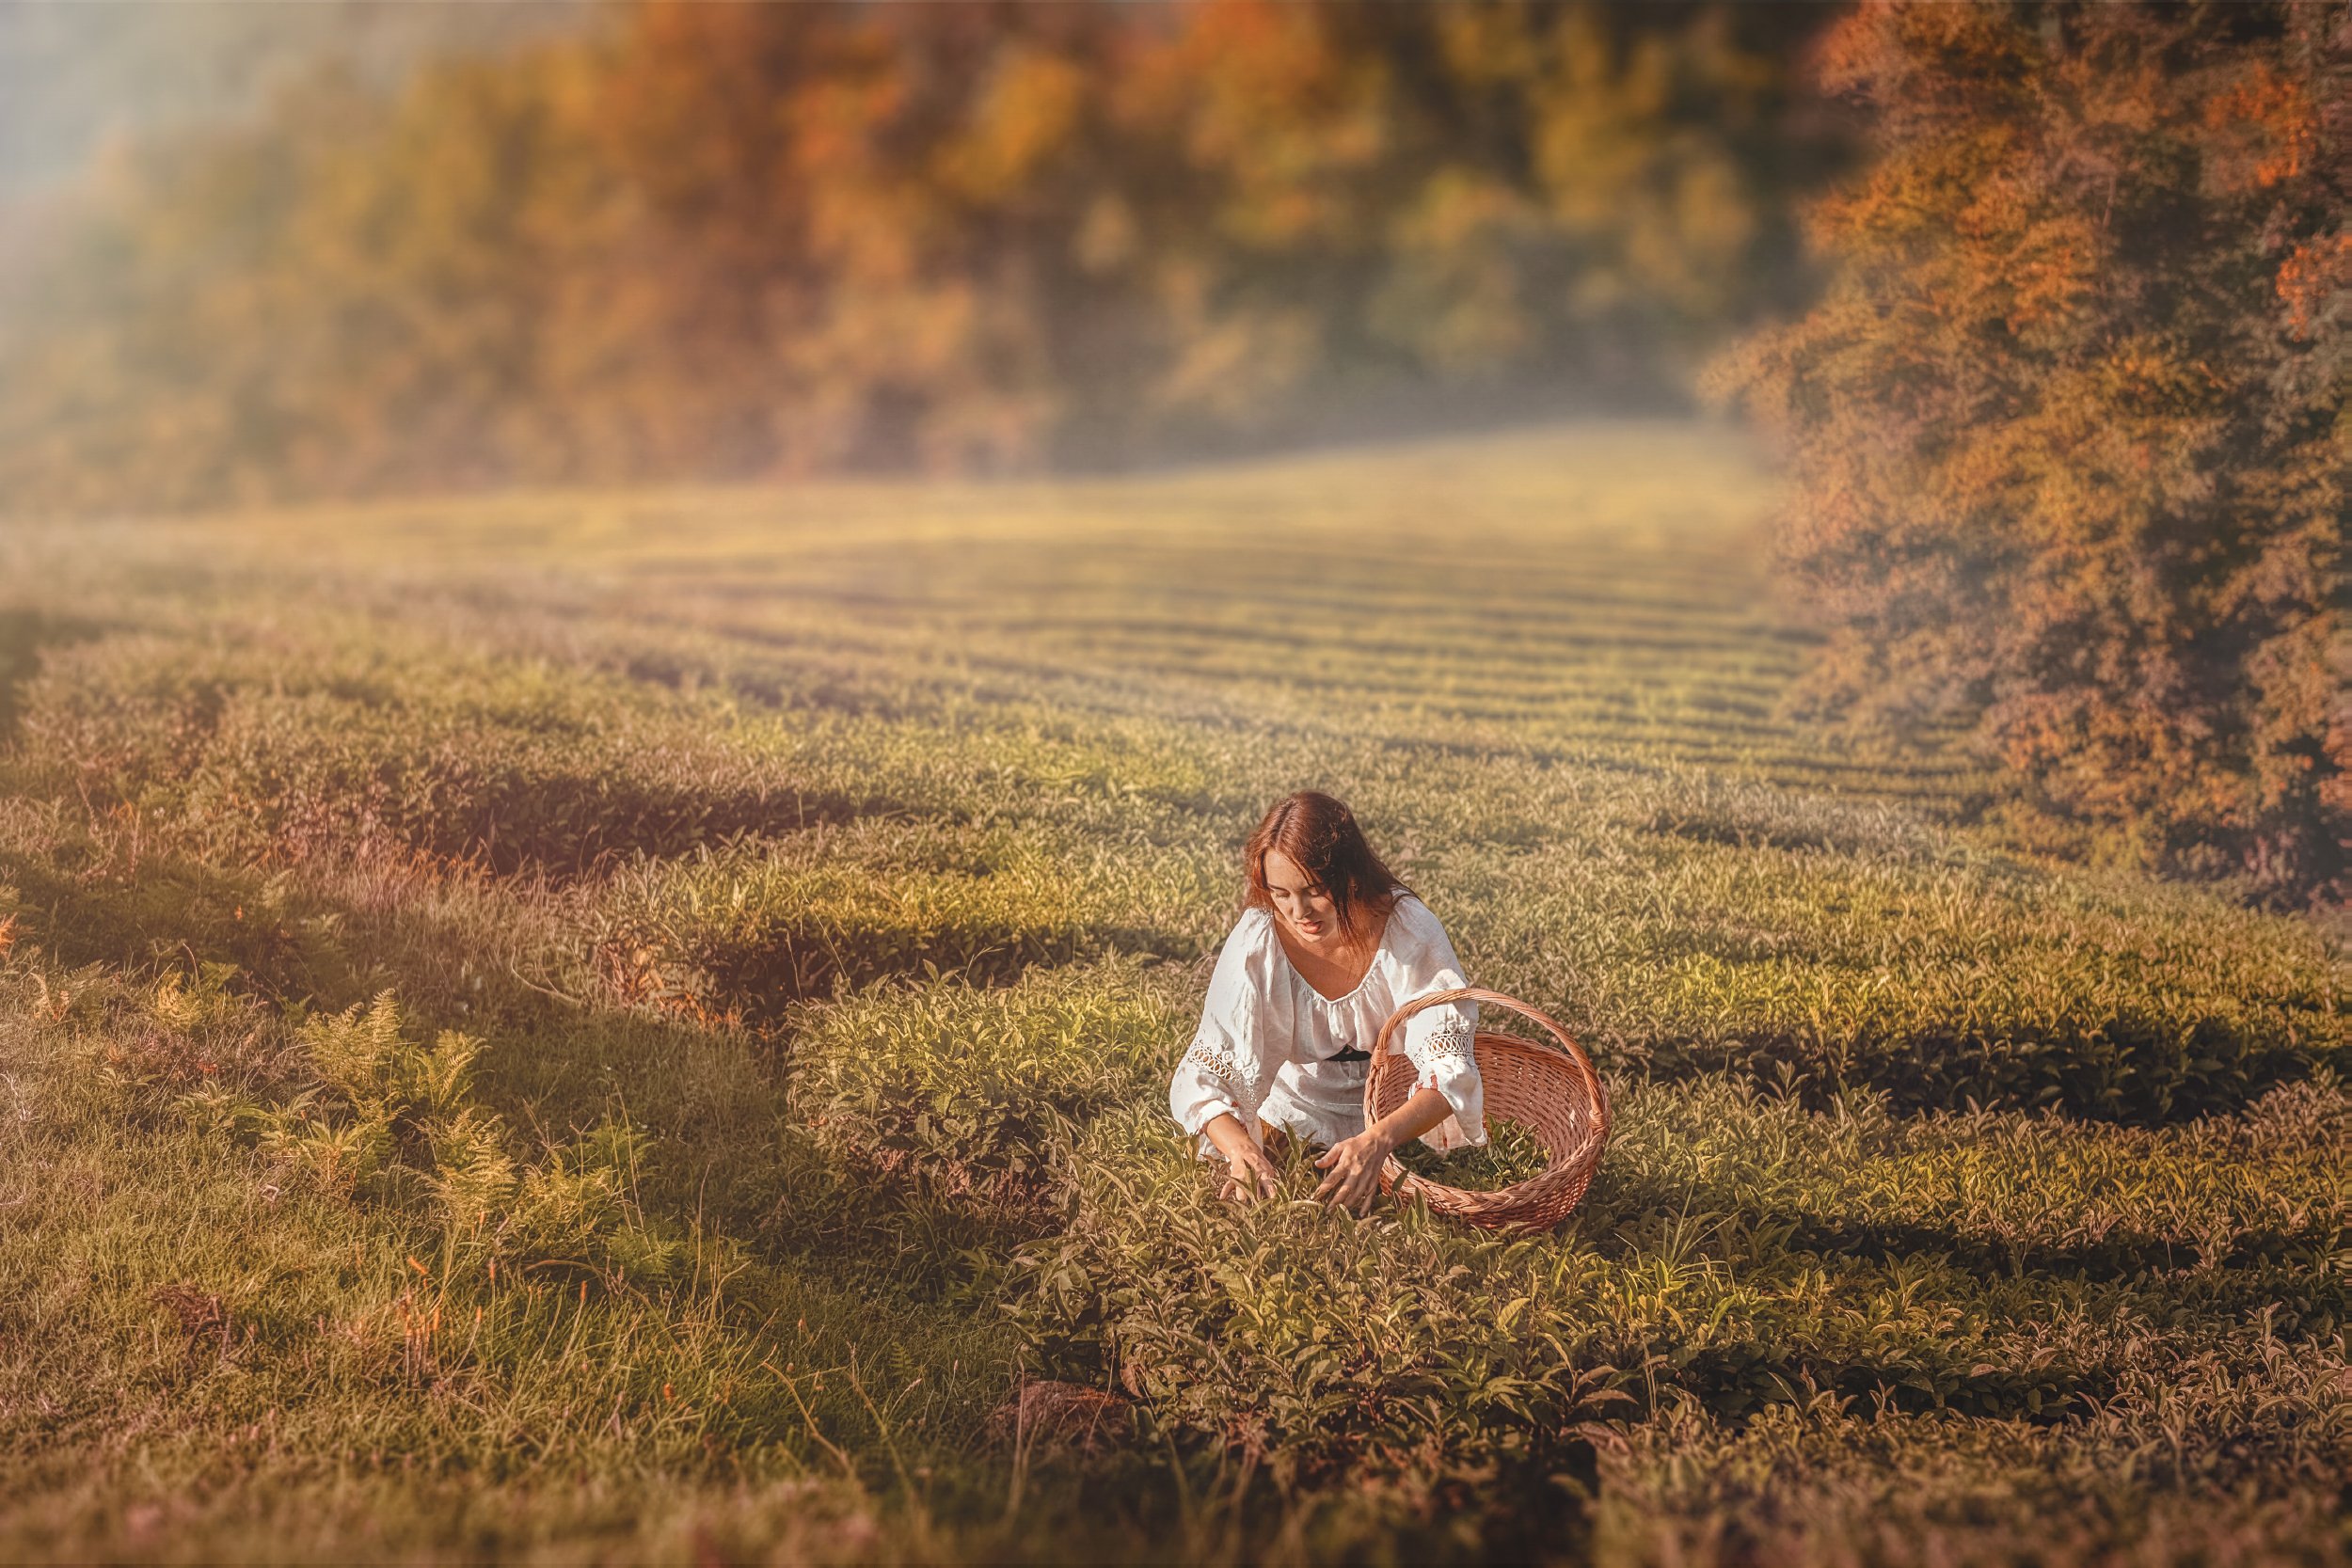 осень чай селянка девушка корзина поле плантация солнце закат, Андрей Володин